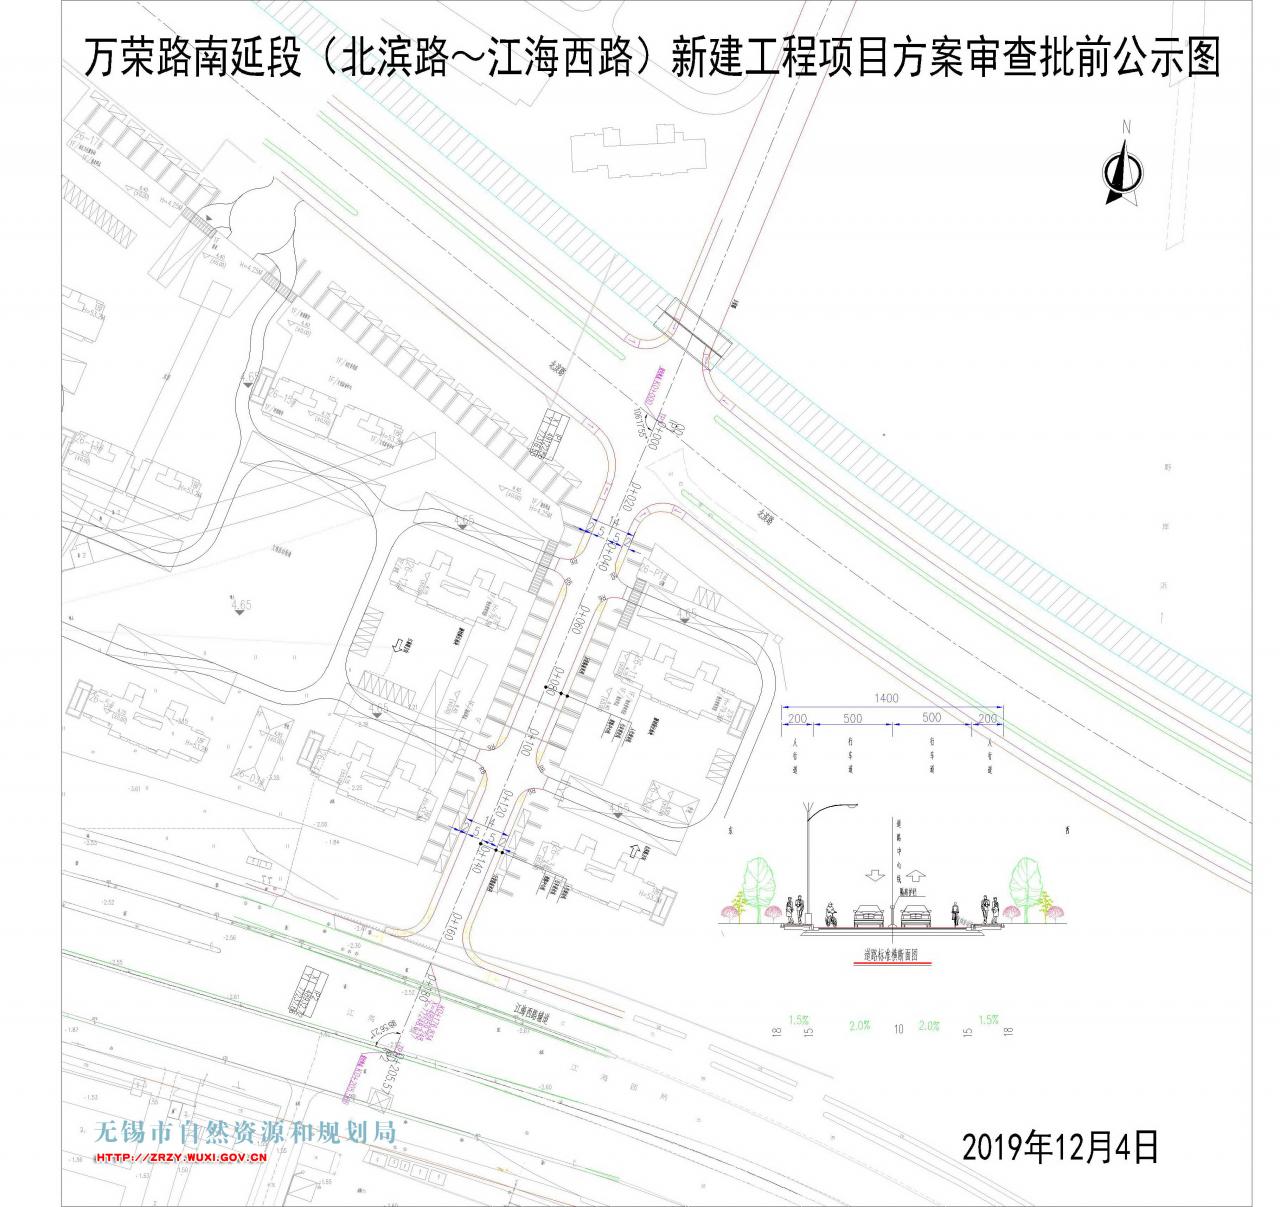 万荣路南延段（北滨路-江海西路）新建工程项目规划方案审查批前公示